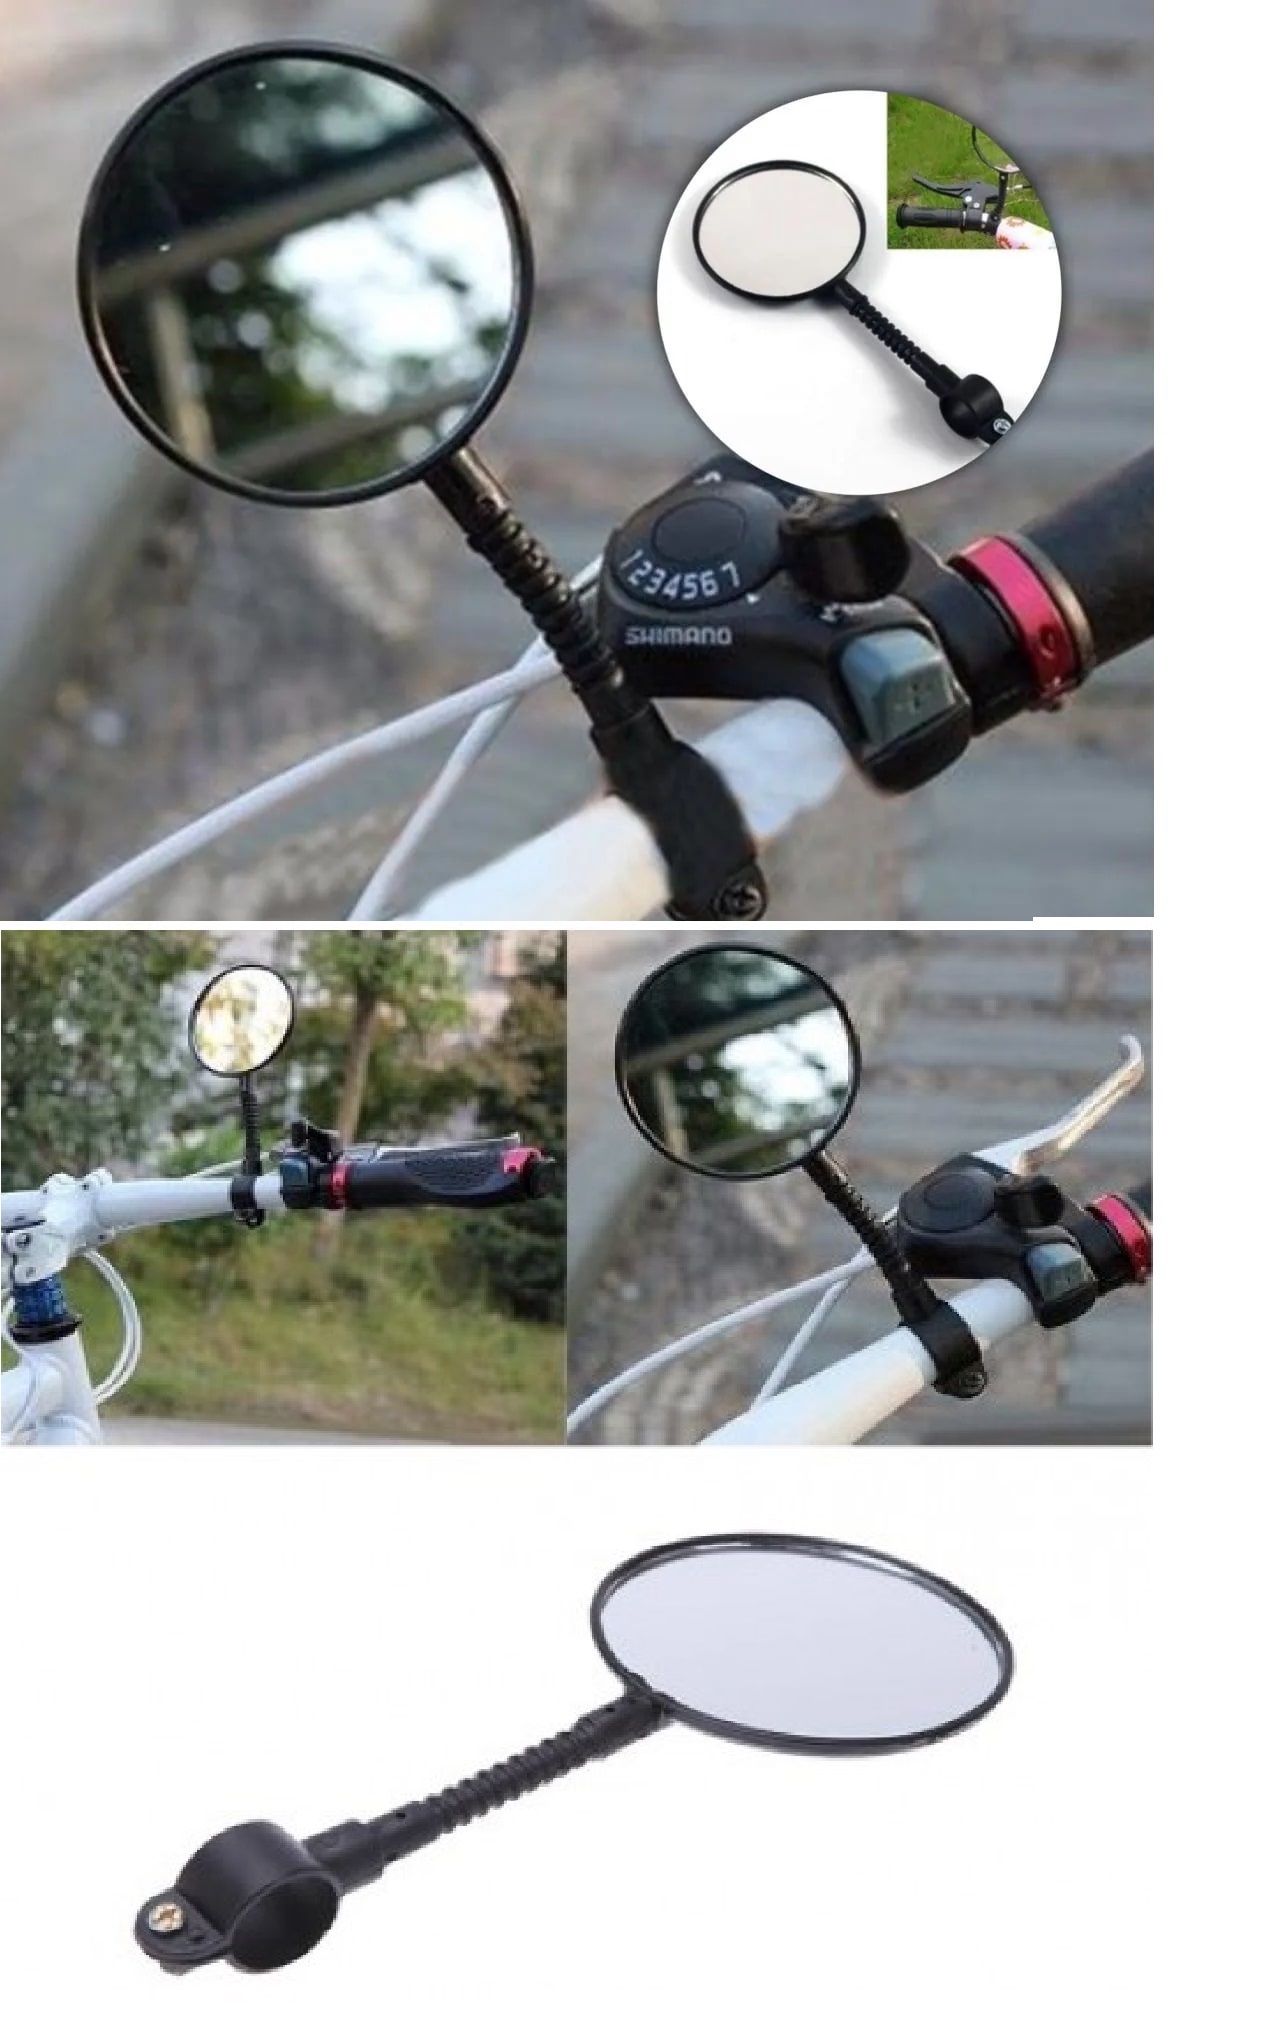 CLZ174 2 Adet Bisiklet Dikiz Aynası Gidona Sabitlenir Geri Görüş Aynası